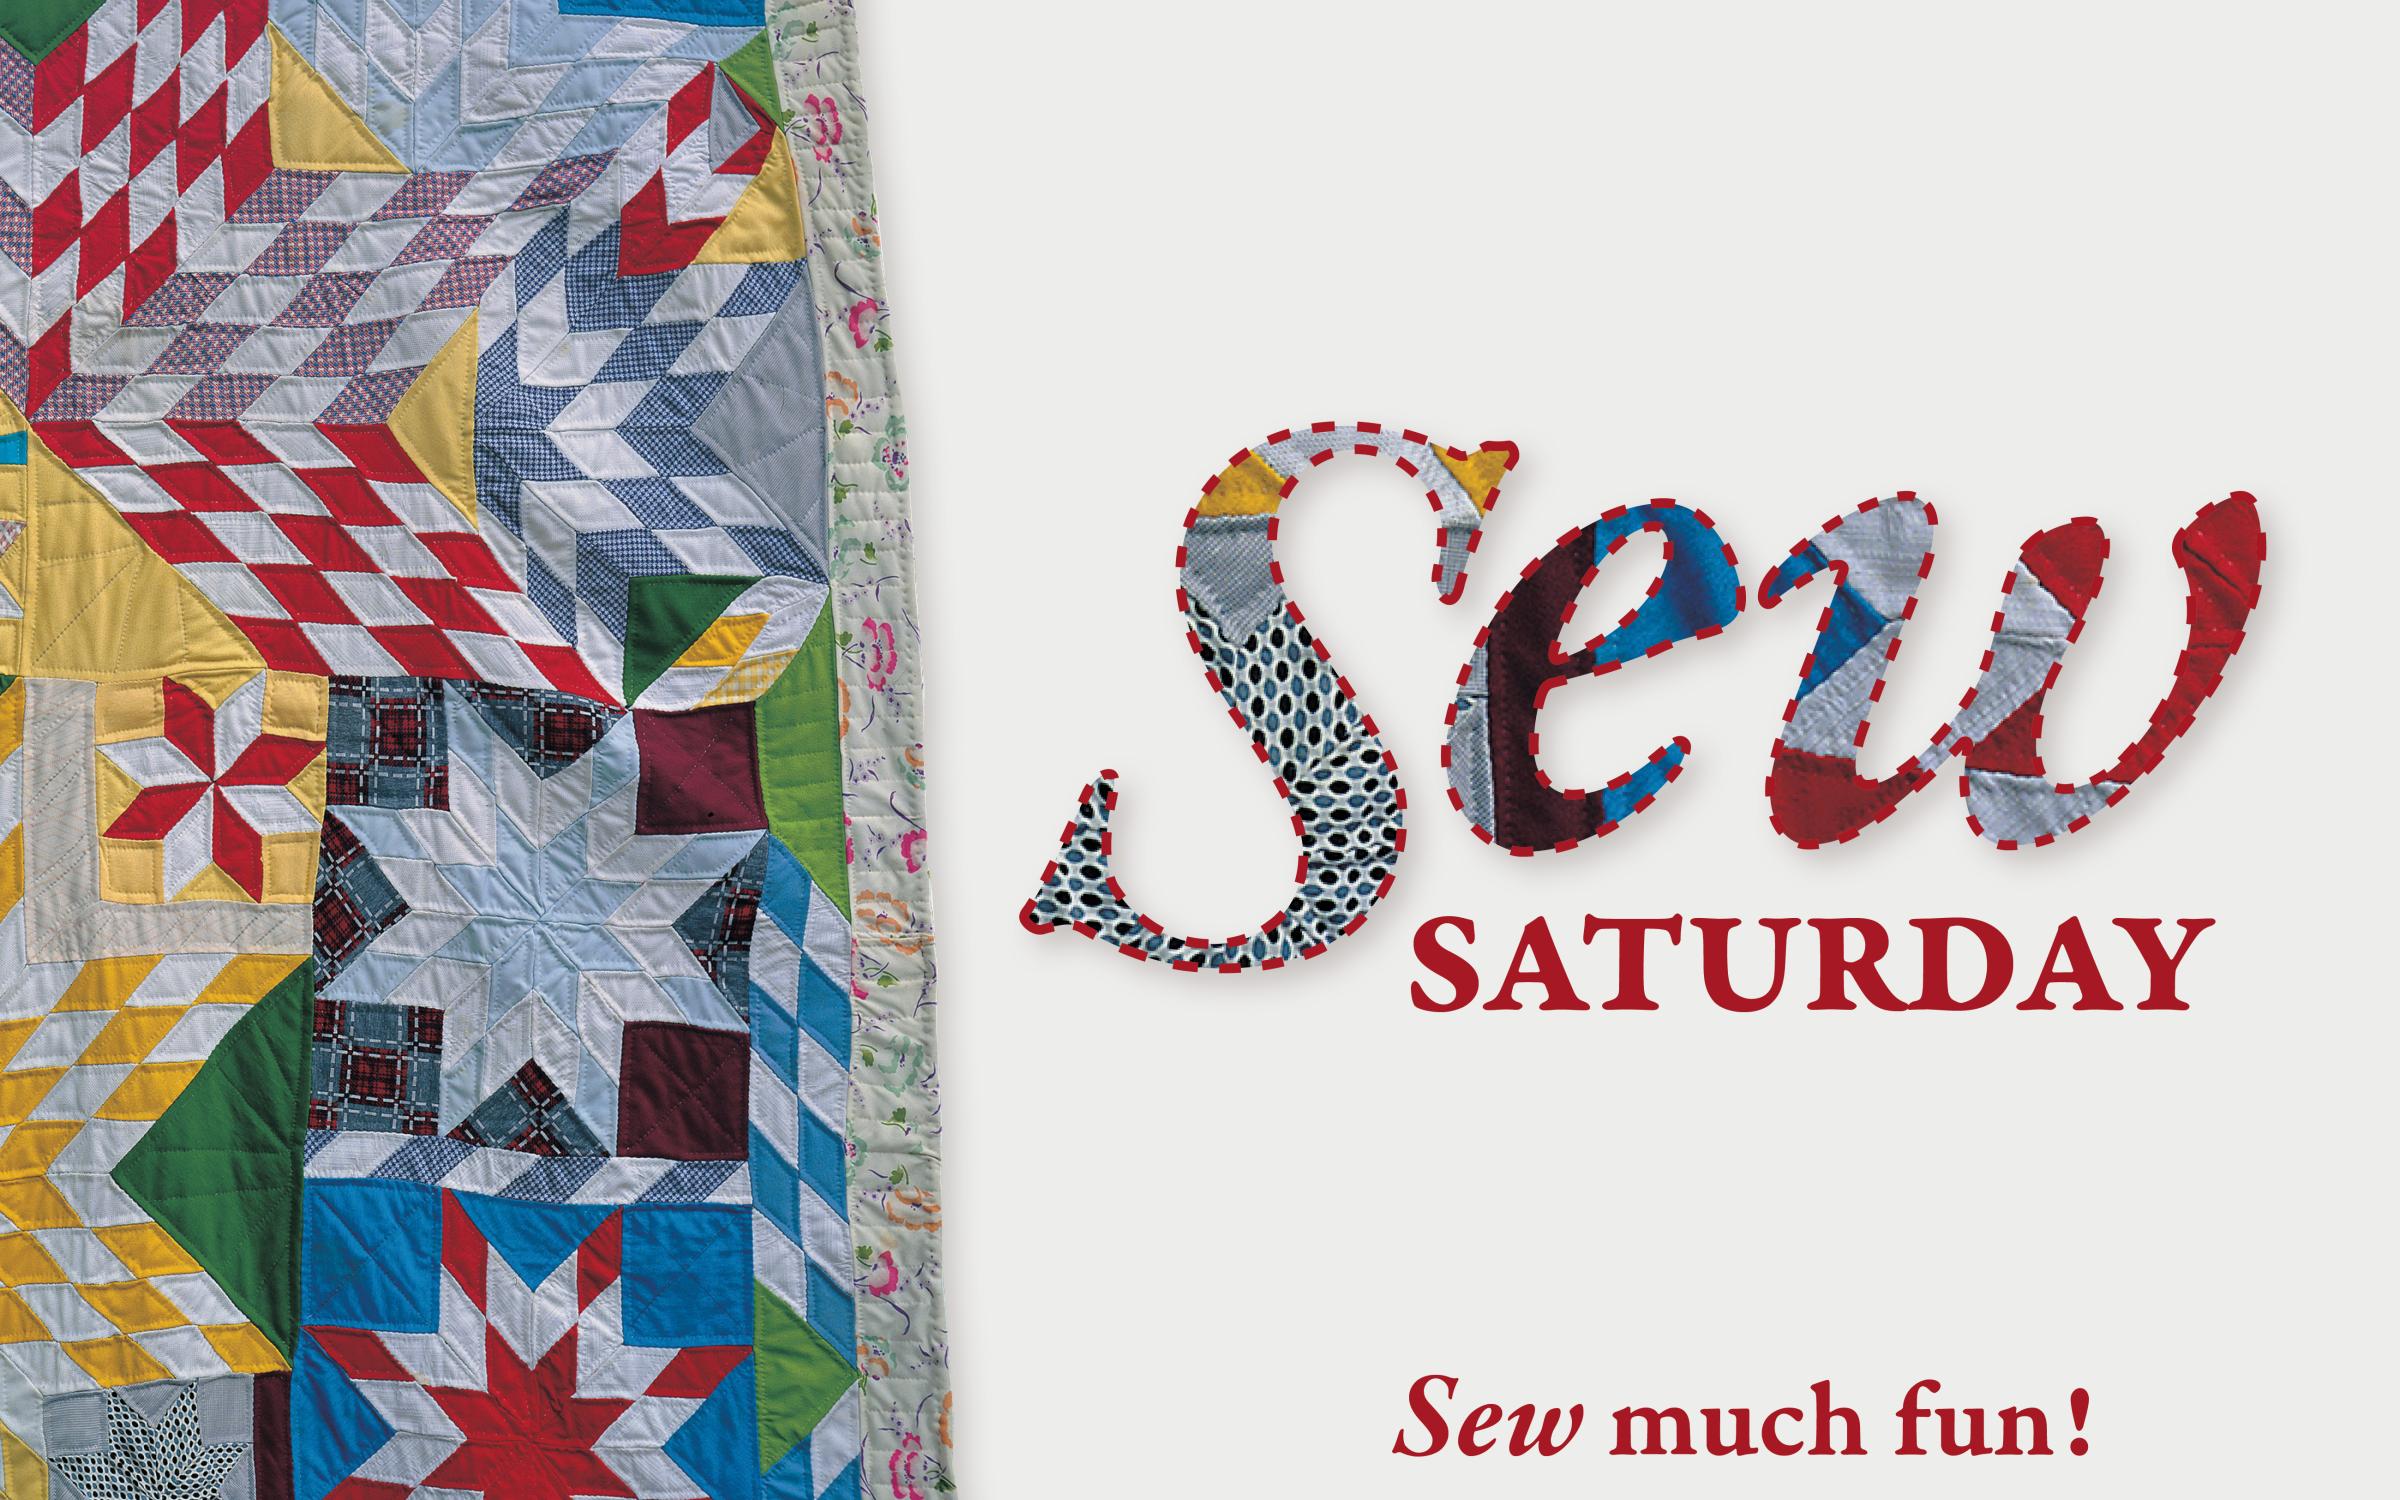 Sew Saturday, Sew Much Fun, Star Quilt on left corner